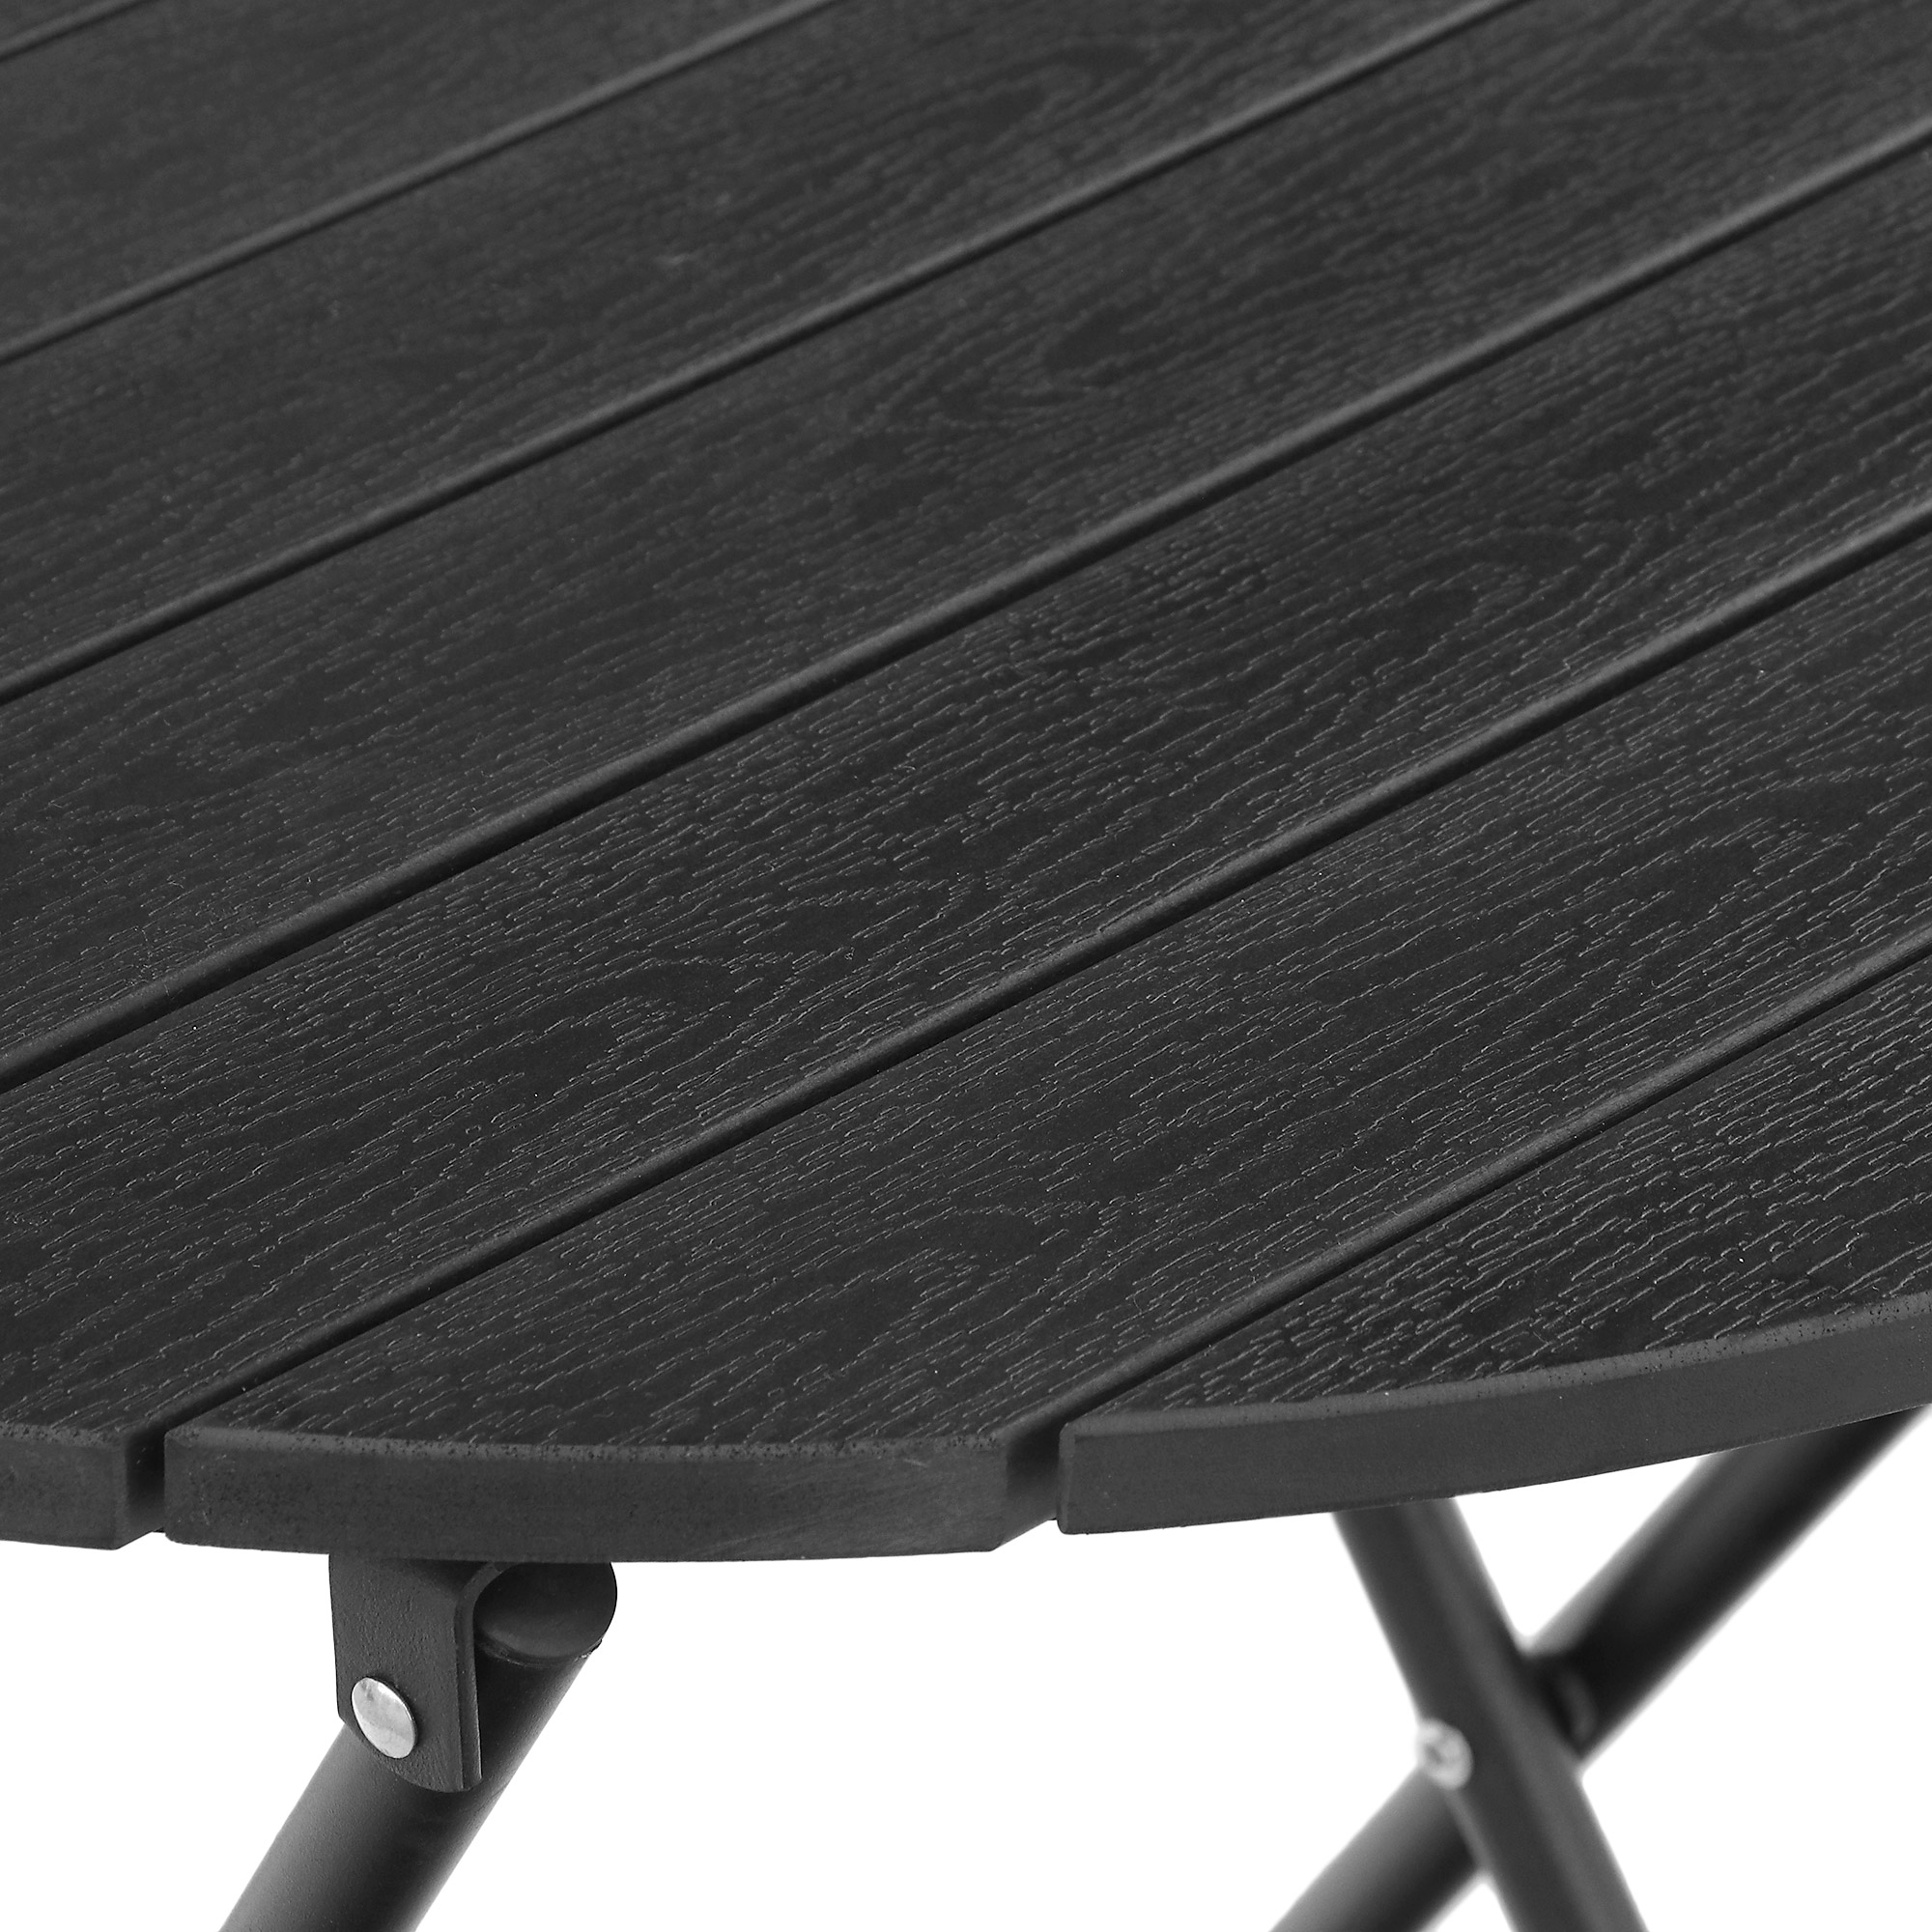 Набор садовой мебели Koopman furniture стол+2 стула, цвет черный, размер 60х60x70 см - фото 6